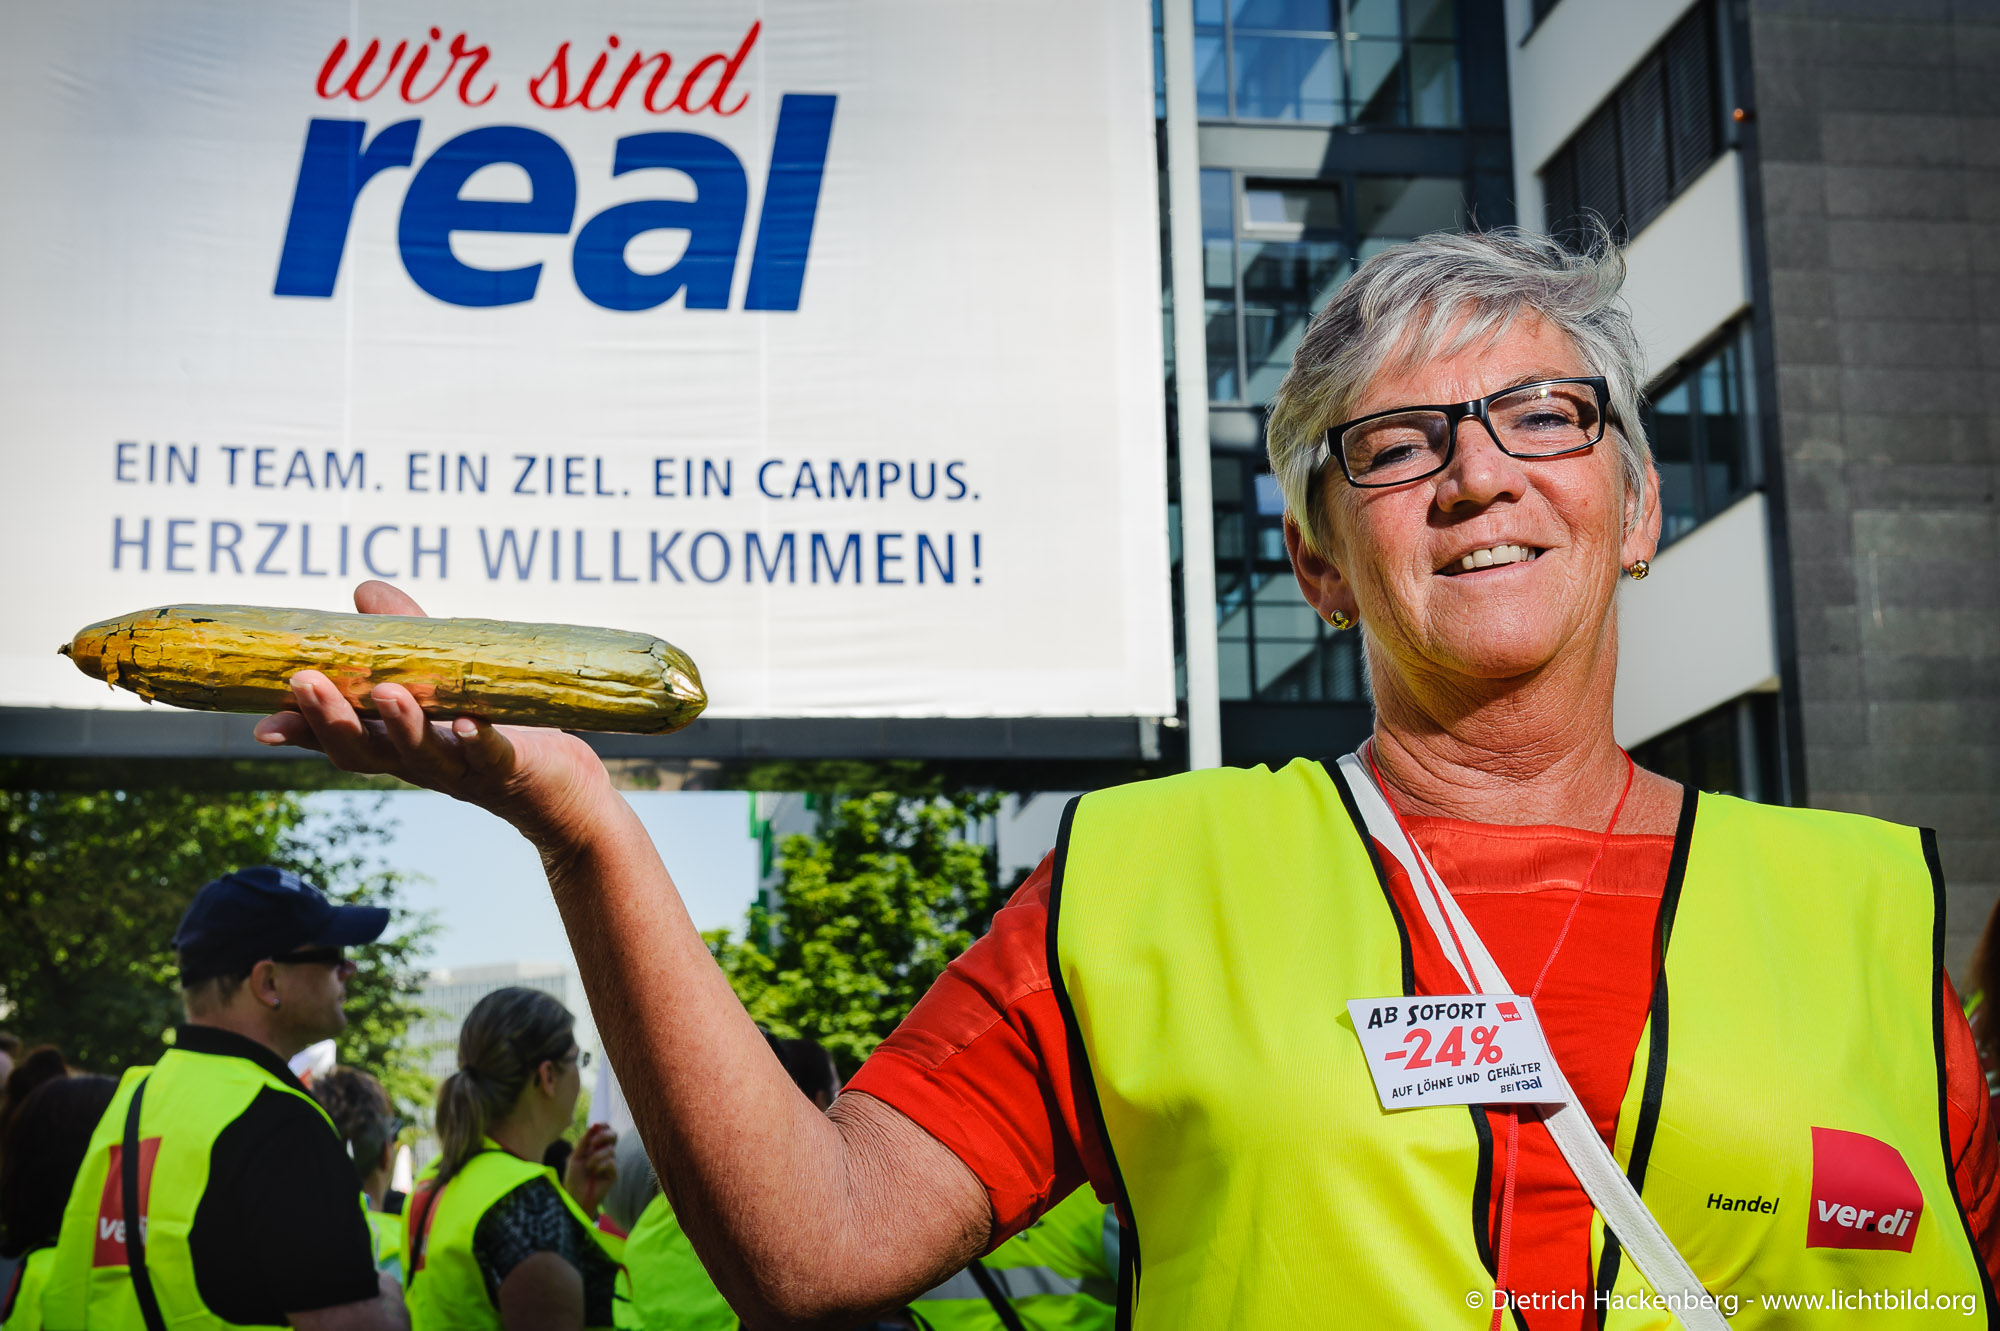 Real Streikende aus NRW ziehen zur Metro/real-Zentrale in Düsseldorf am 13.07.2018. Foto © Dietrich Hackenberg